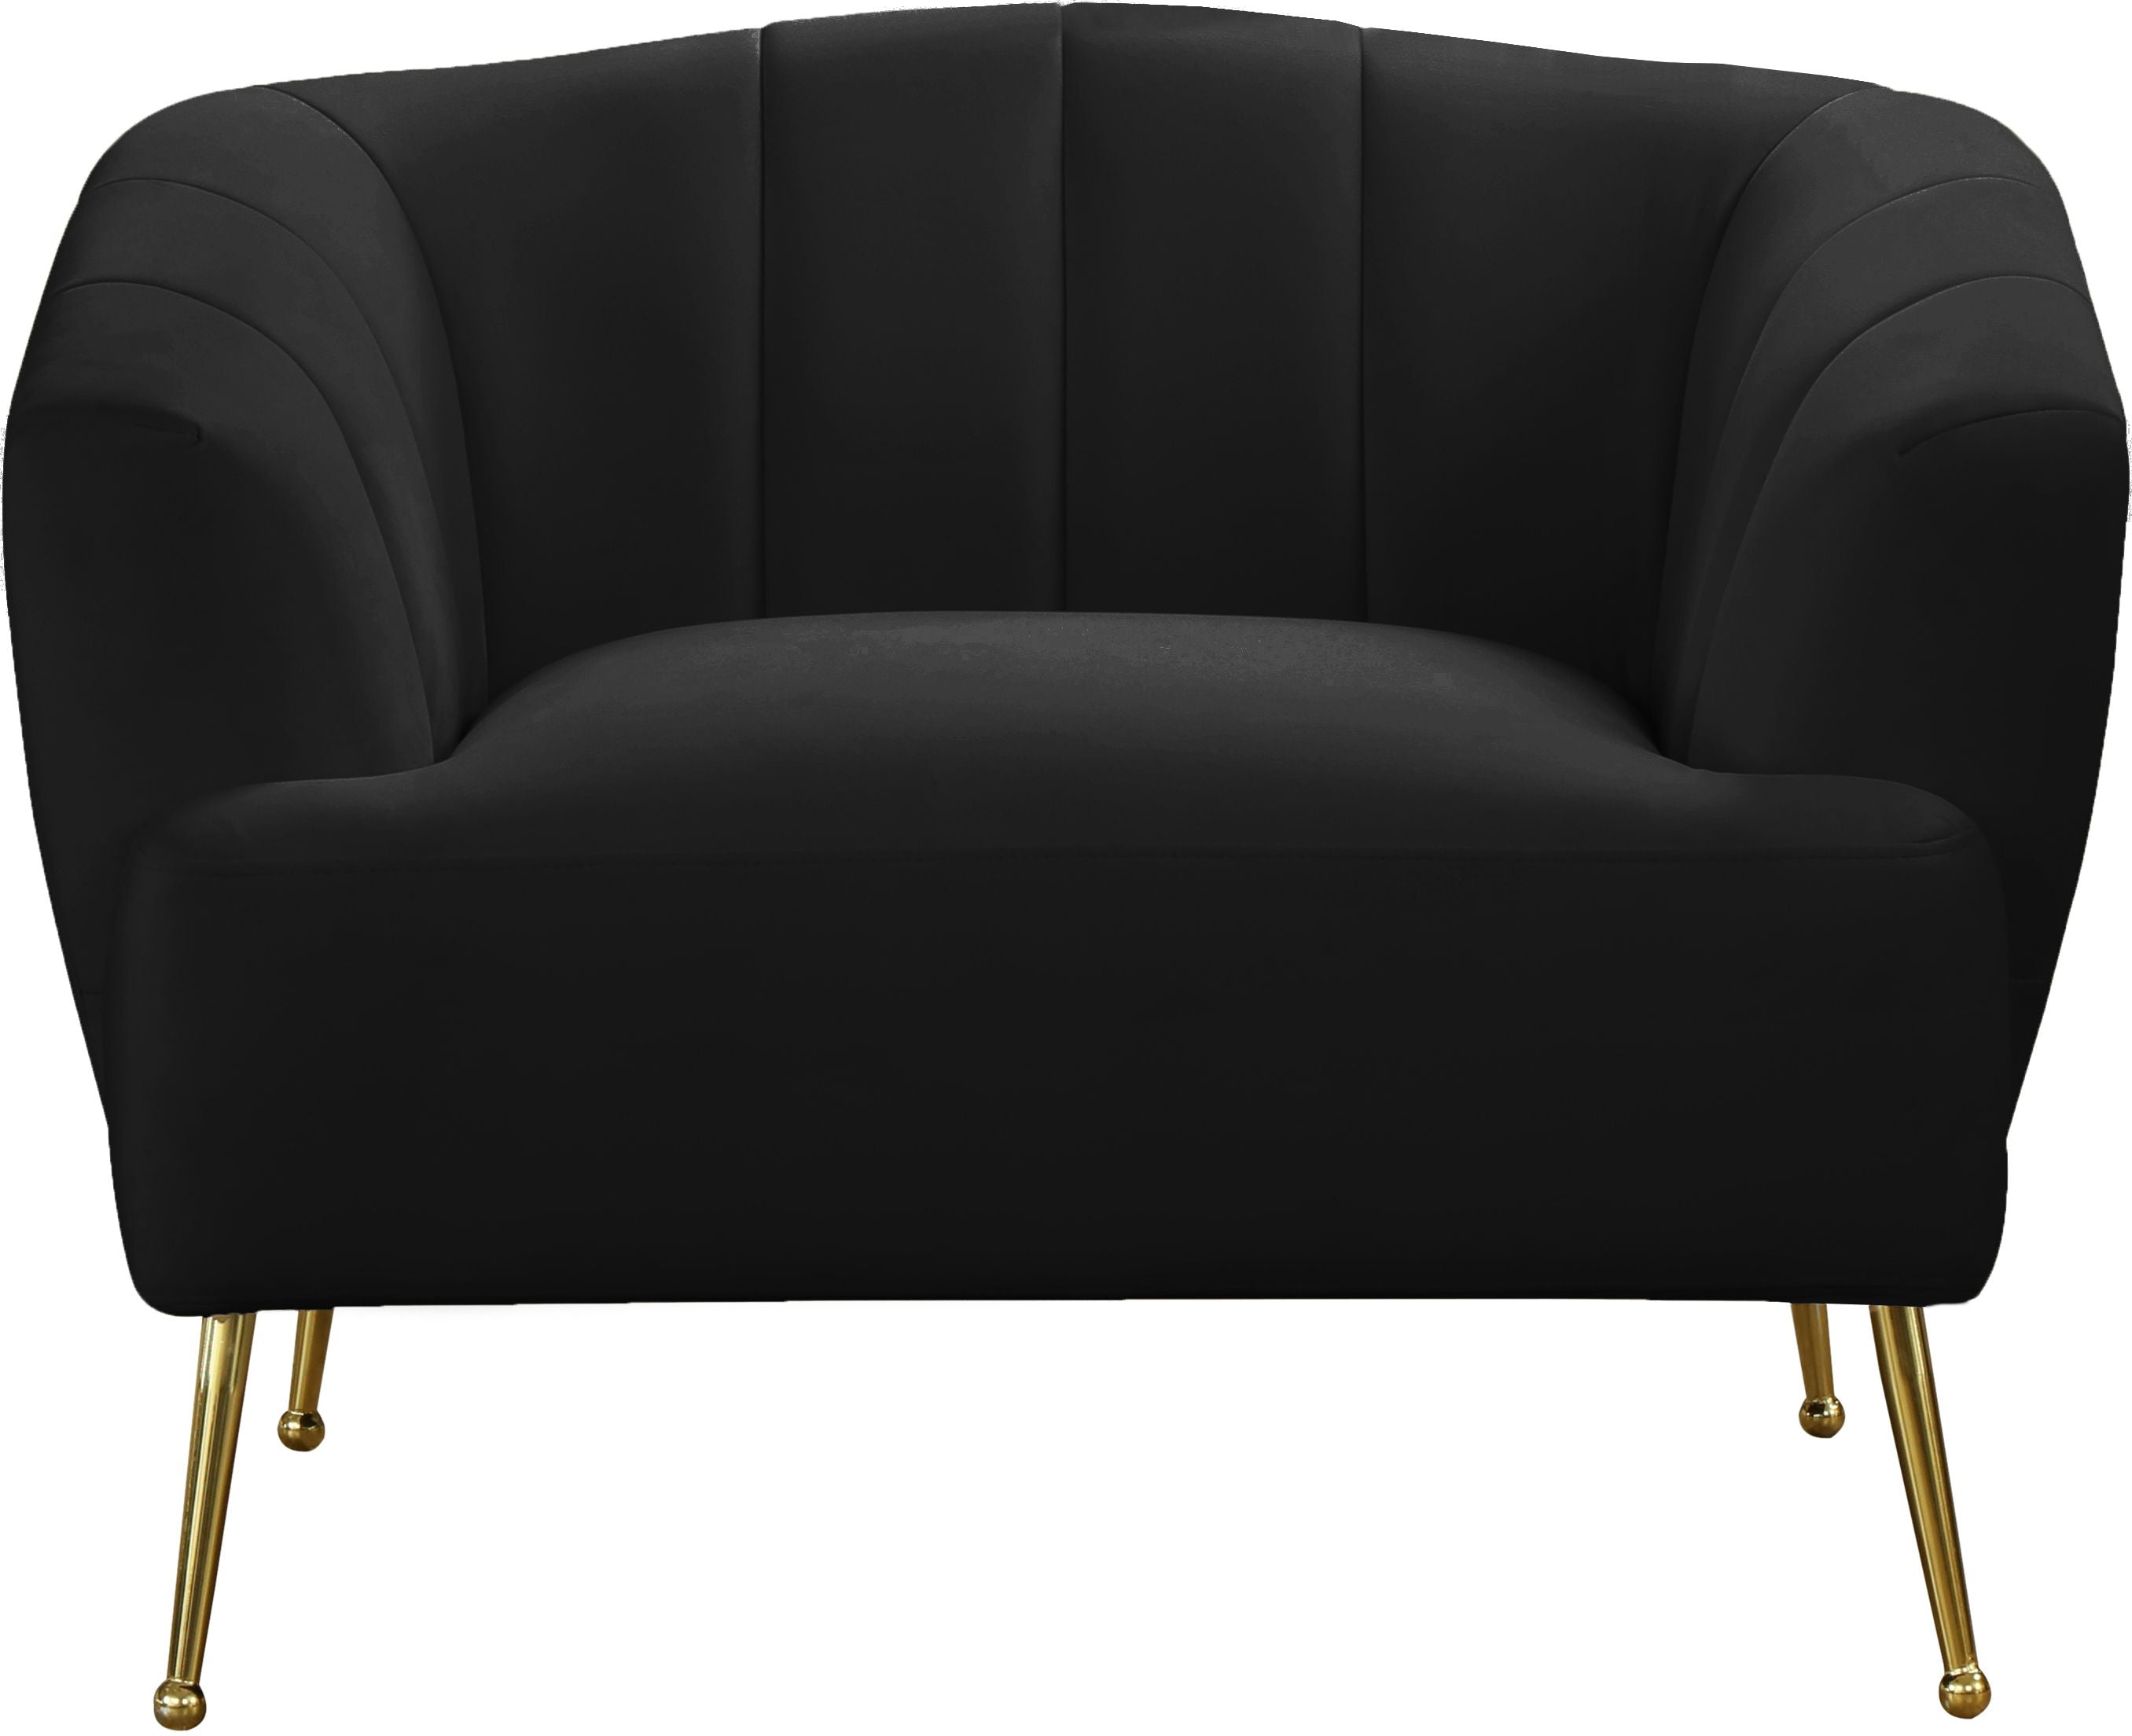 Tori - Chair - 5th Avenue Furniture